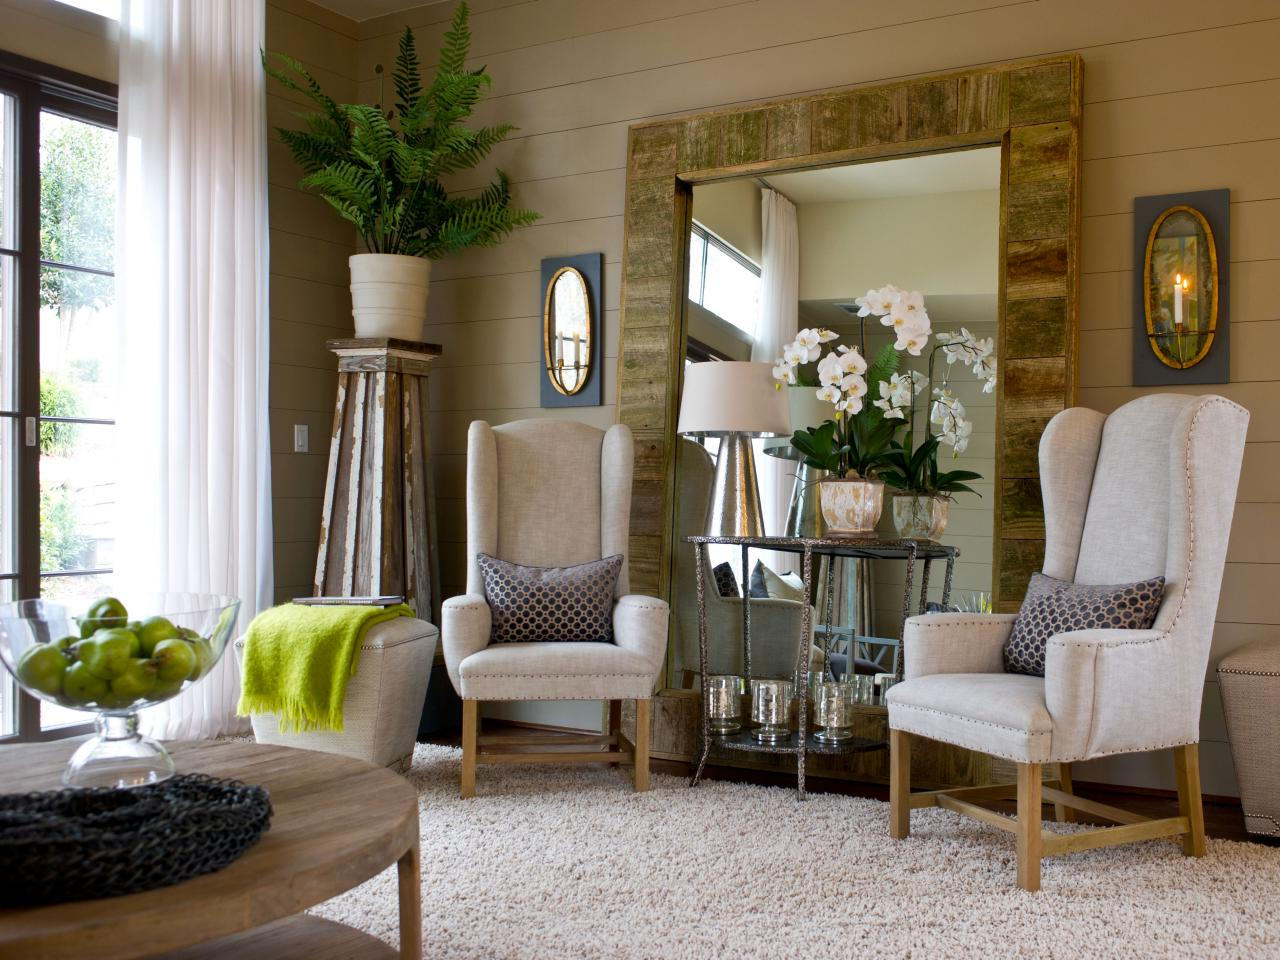 taconescogracia: Interior Decoration Ideas For Living Room